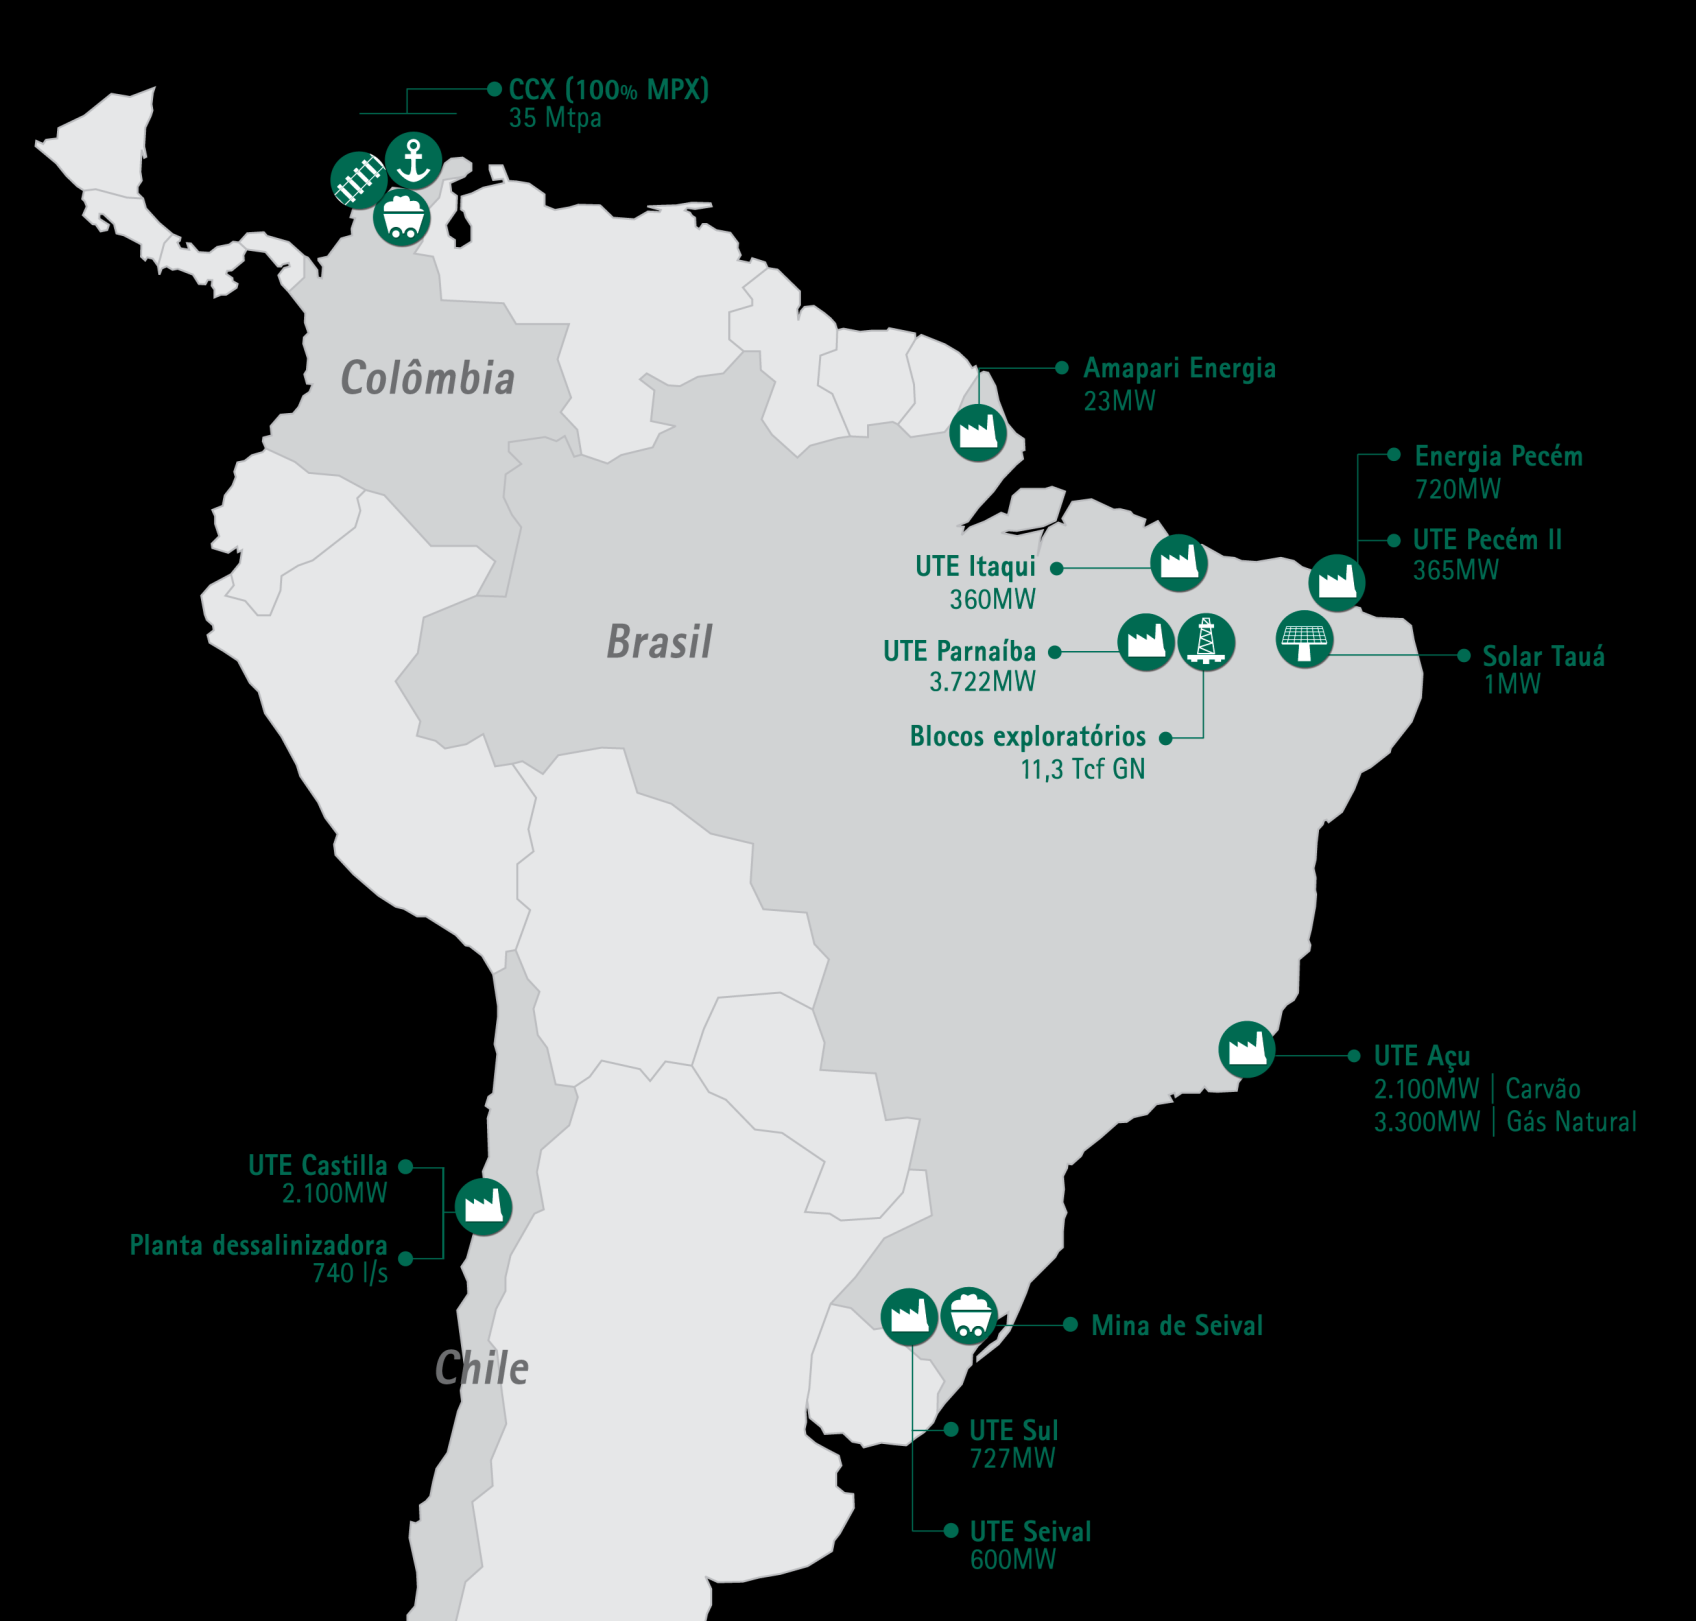 Portfólio de empreendimentos da MPX MPX: uma empresa de energia diversificada e com o maior portfólio de empreendimentos integrados da América do Sul Geração 3 GW com contratos assegurados